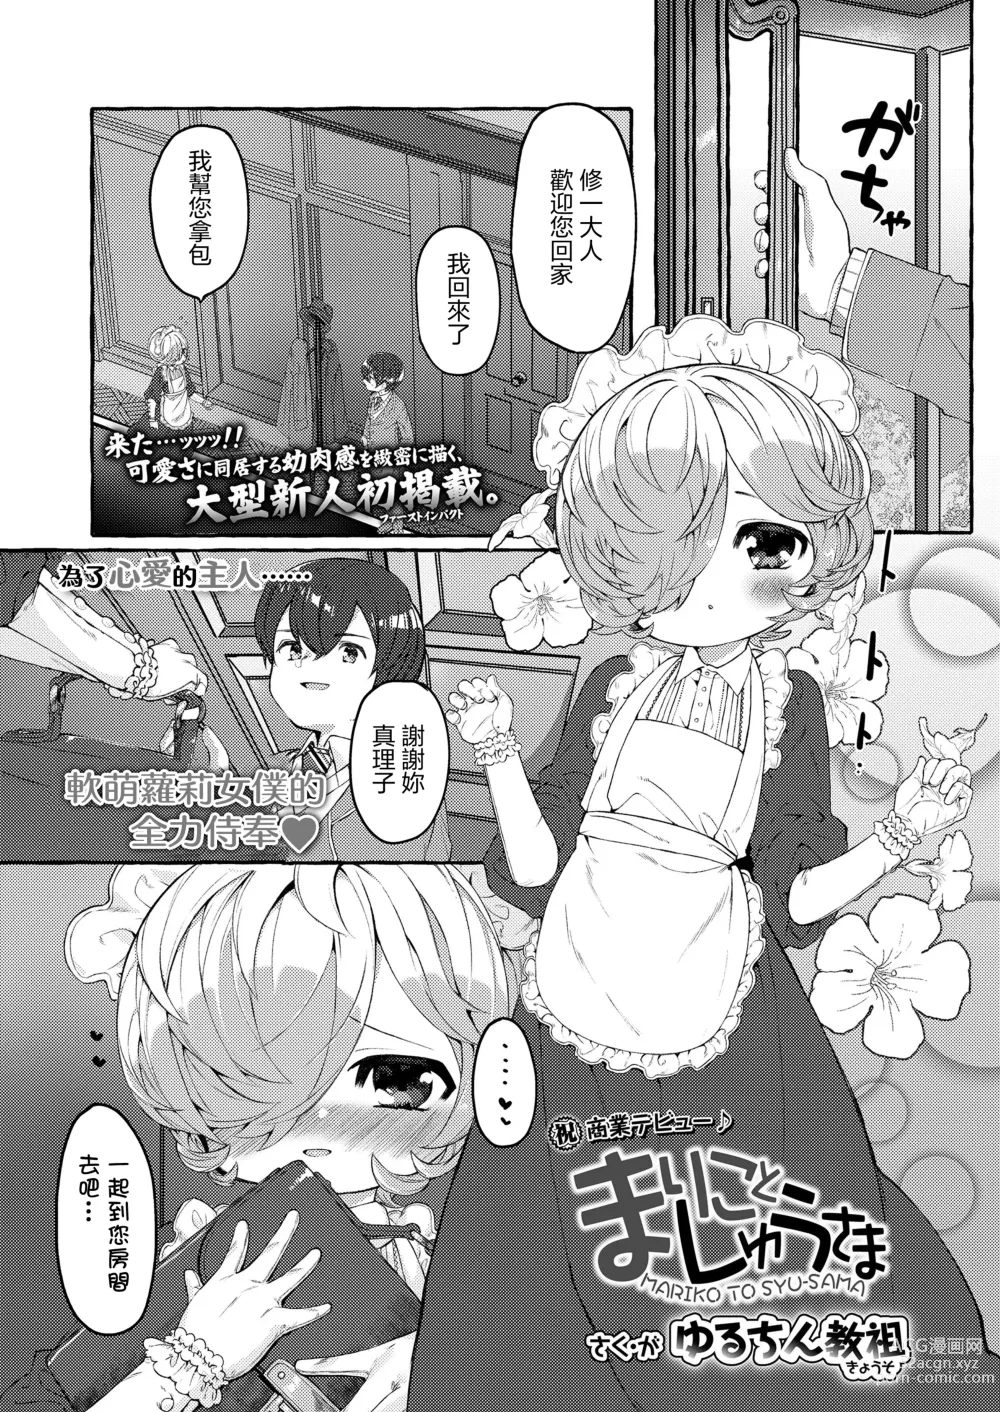 Page 1 of doujinshi Mariko to Syu-sama